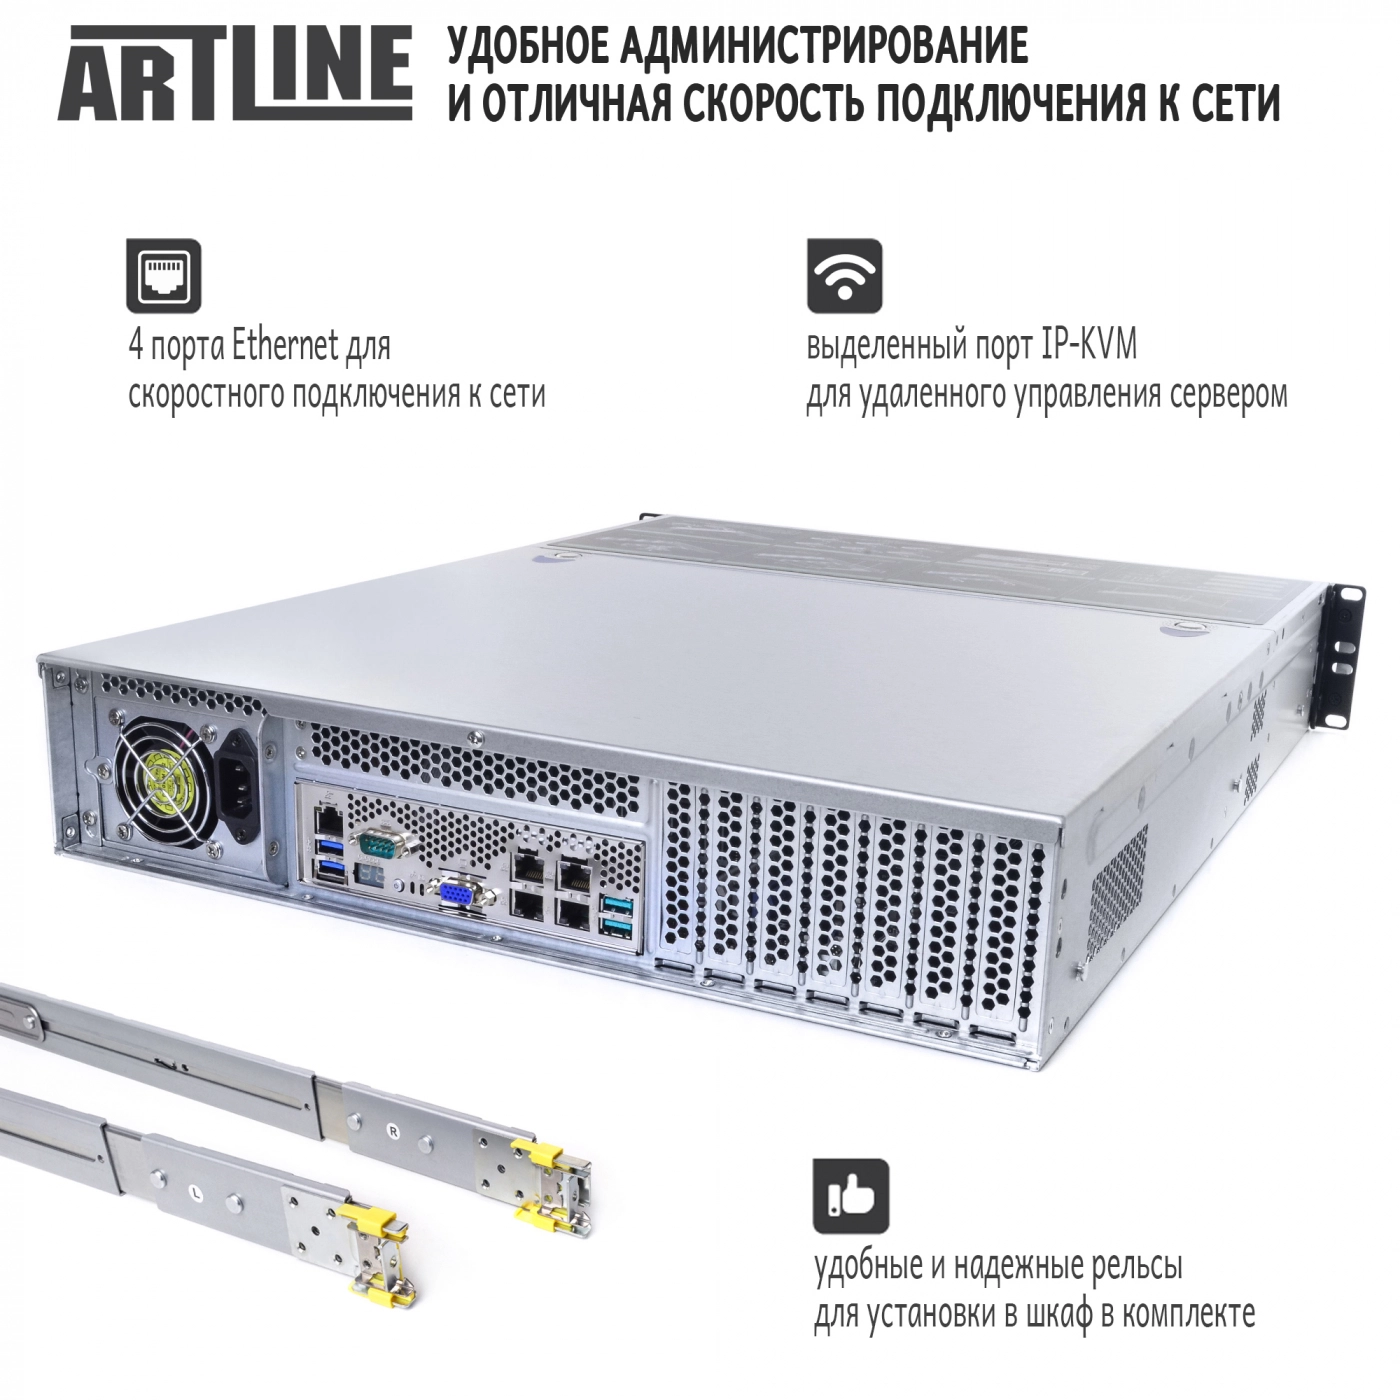 Купить Сервер ARTLINE Business R32v02 - фото 2